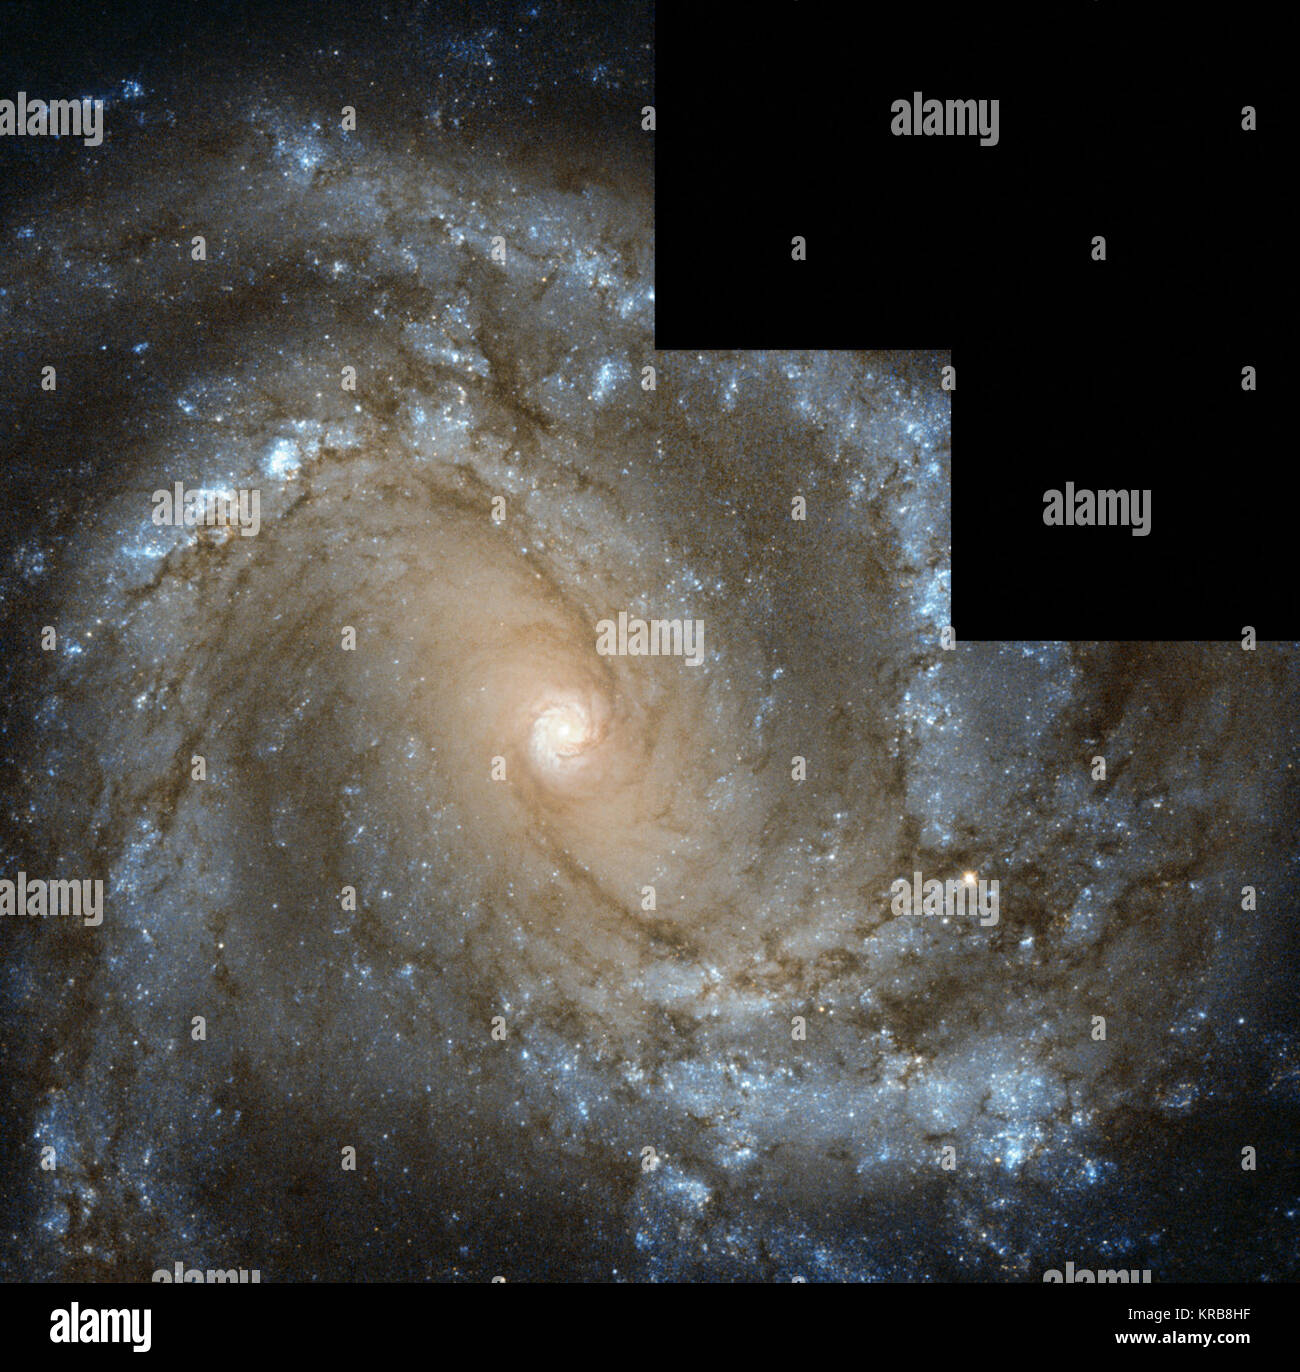 La NASA/ESA Hubble Space Telescope a capturé cette image de galaxie spirale voisine Messier 61, également connu sous le nom de NGC 4303. La galaxie, situé à seulement 55 millions d'années-lumière de la Terre, est à peu près la taille de la Voie Lactée, avec un diamètre d'environ 100 000 années-lumière. La galaxie est remarquable pour une raison particulière - six supernovae ont été observées à l'intérieur de Messier 61, un total qui le place dans le haut de la poignée de galaxies aux côtés de Messier 83, également avec six, et NGC 6946, avec un total de neuf observé de supernovae. Dans cette image de Hubble la galaxie est vue de face comme si posant pour une Banque D'Images